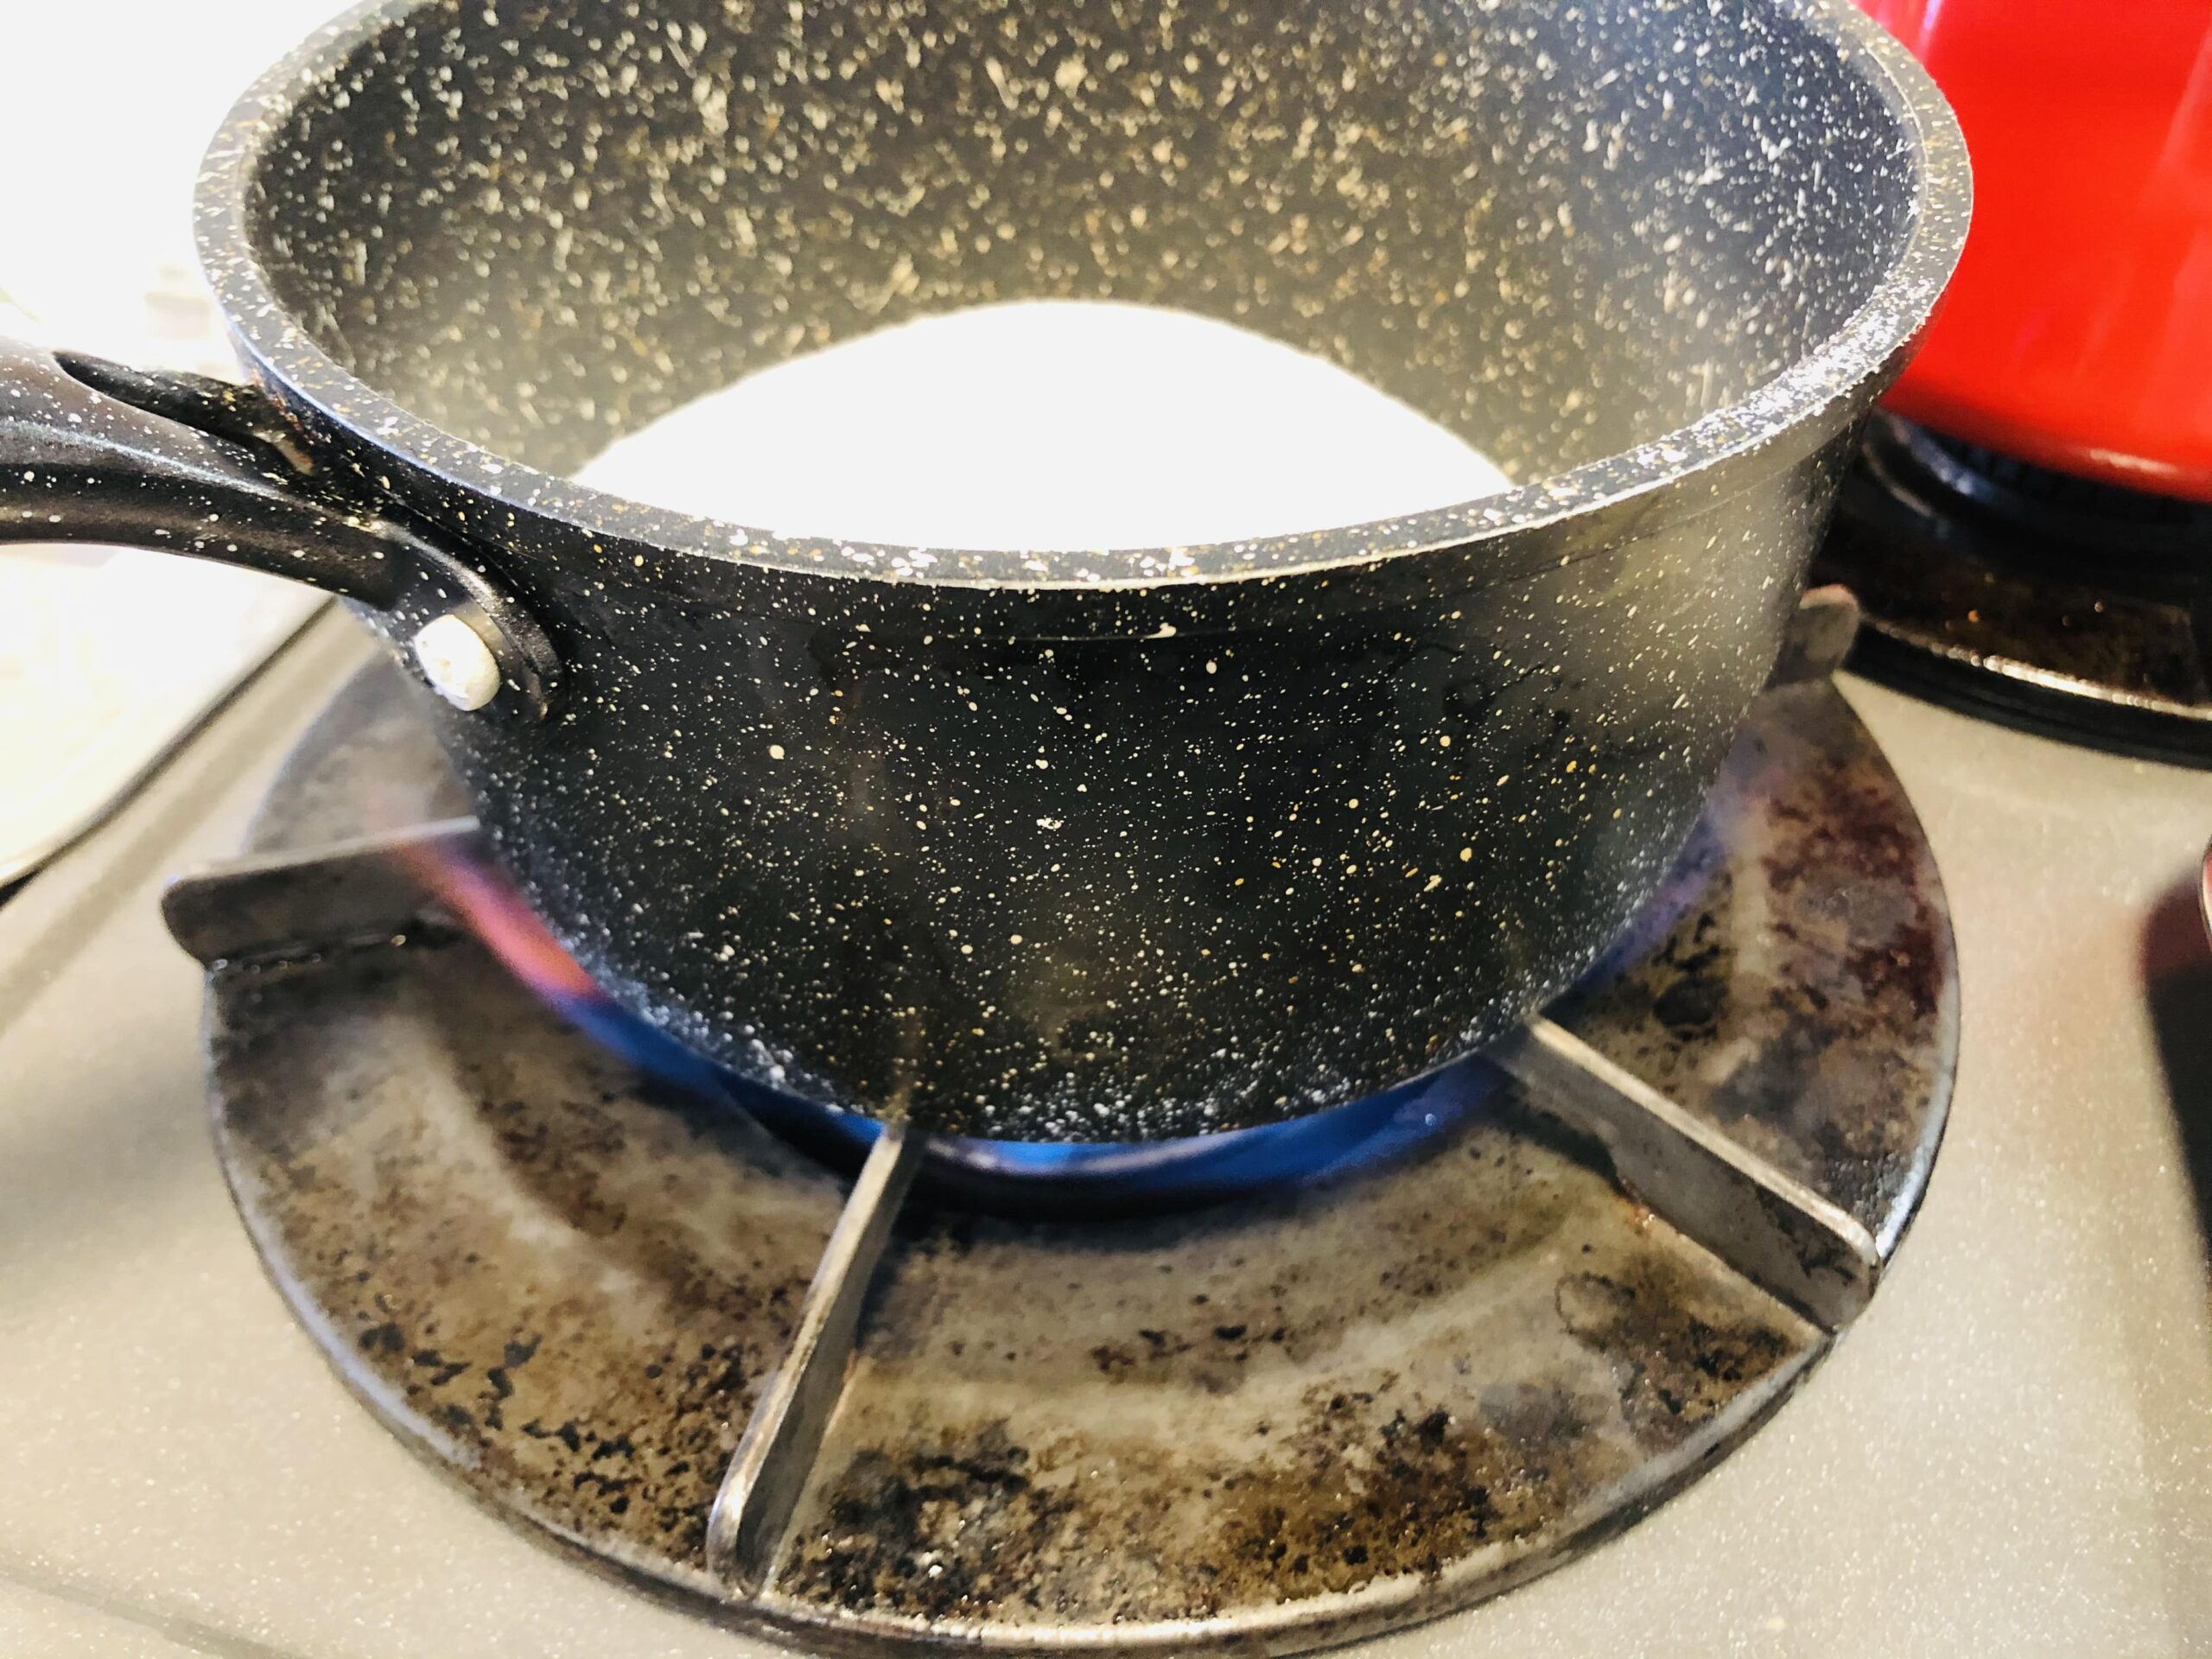 カラメル用のグラニュー糖を鍋に入れ強火にかけている様子の画像です